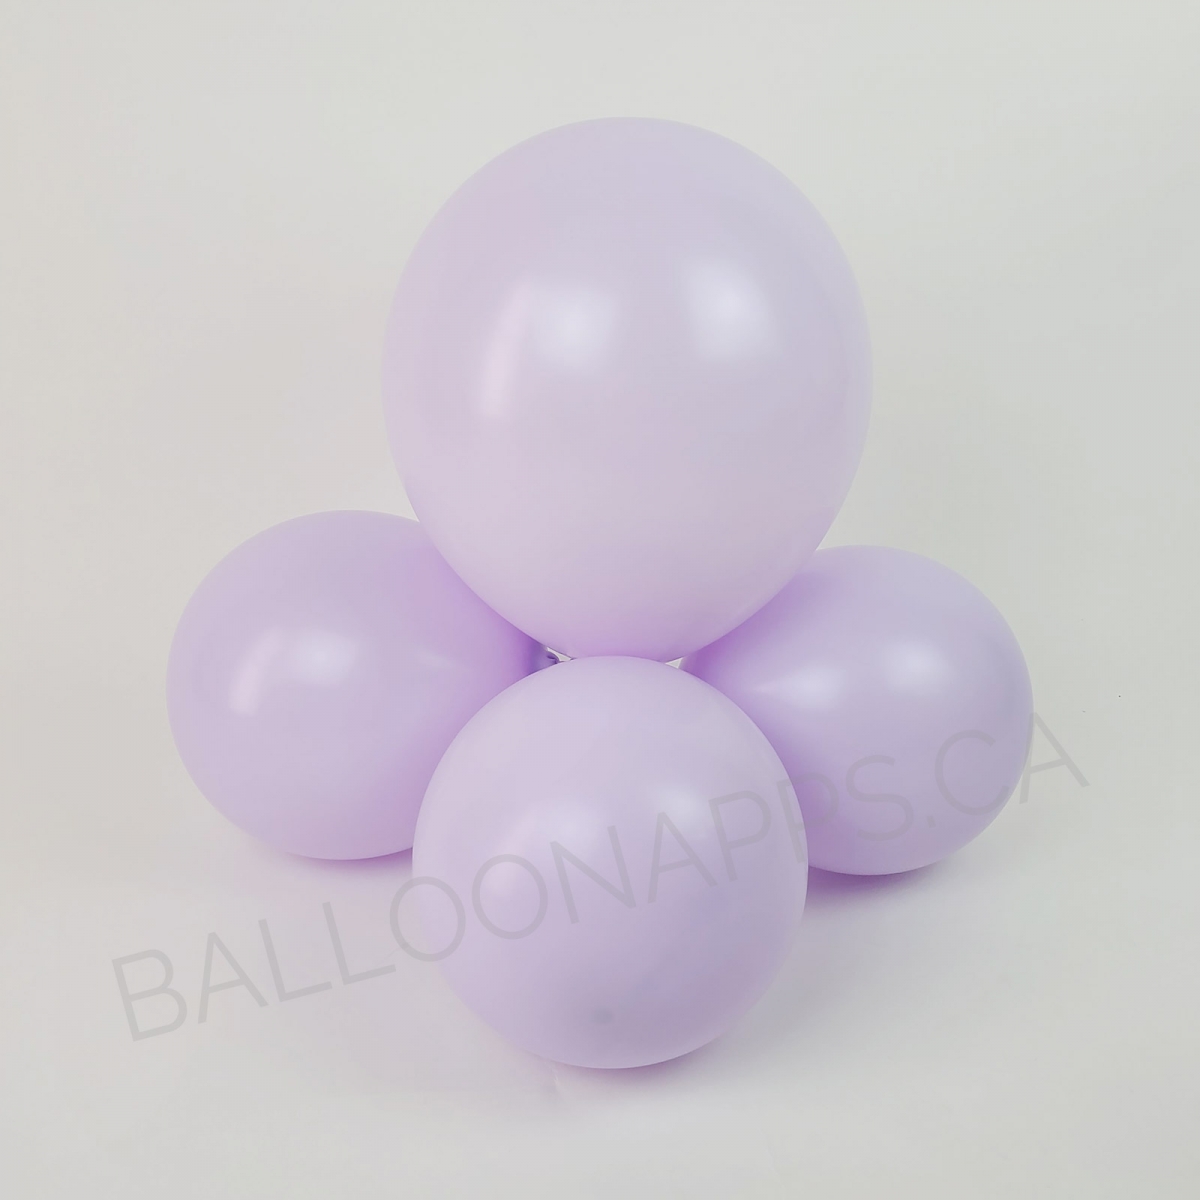 MACARON (50) 11" Macaron Lilac high-quality balloons